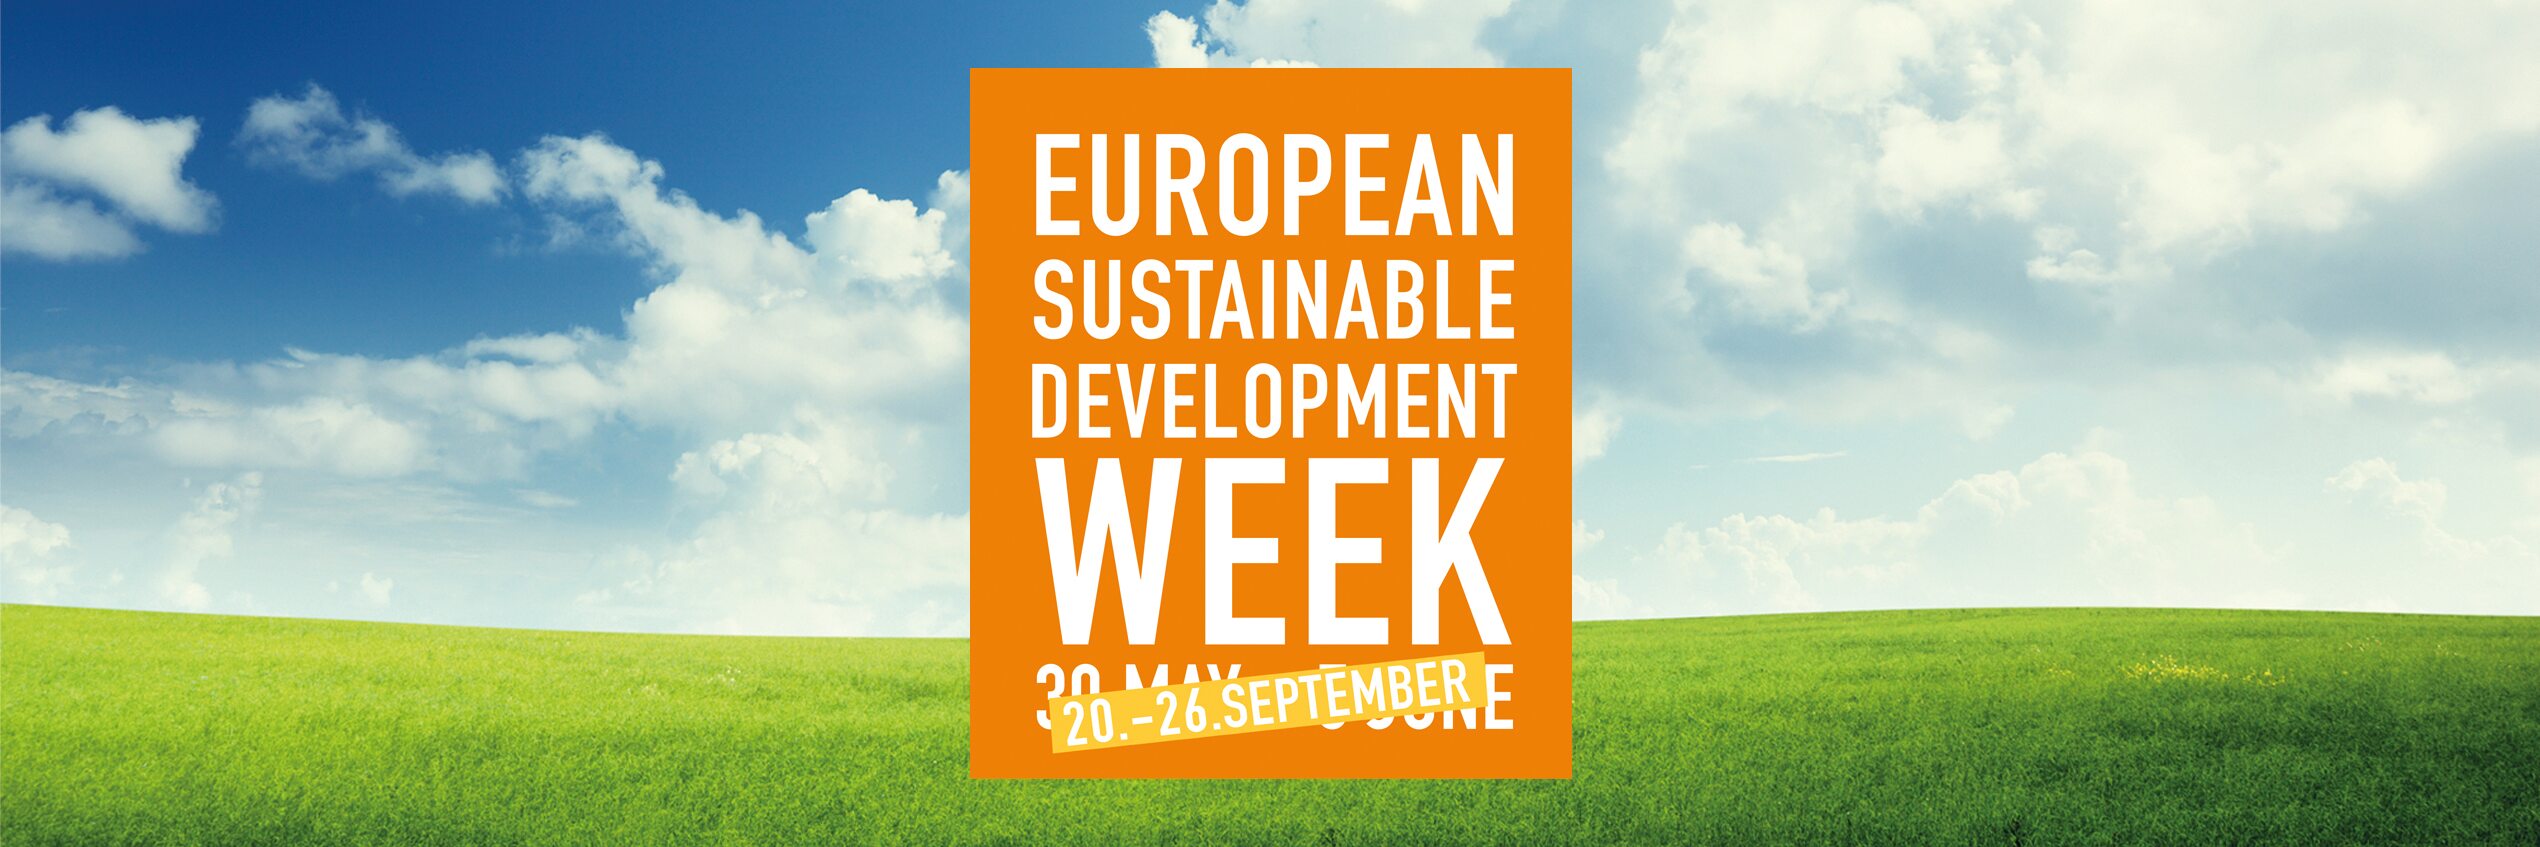 Diehl Metering participa en la Semana Europea del Desarrollo Sostenible